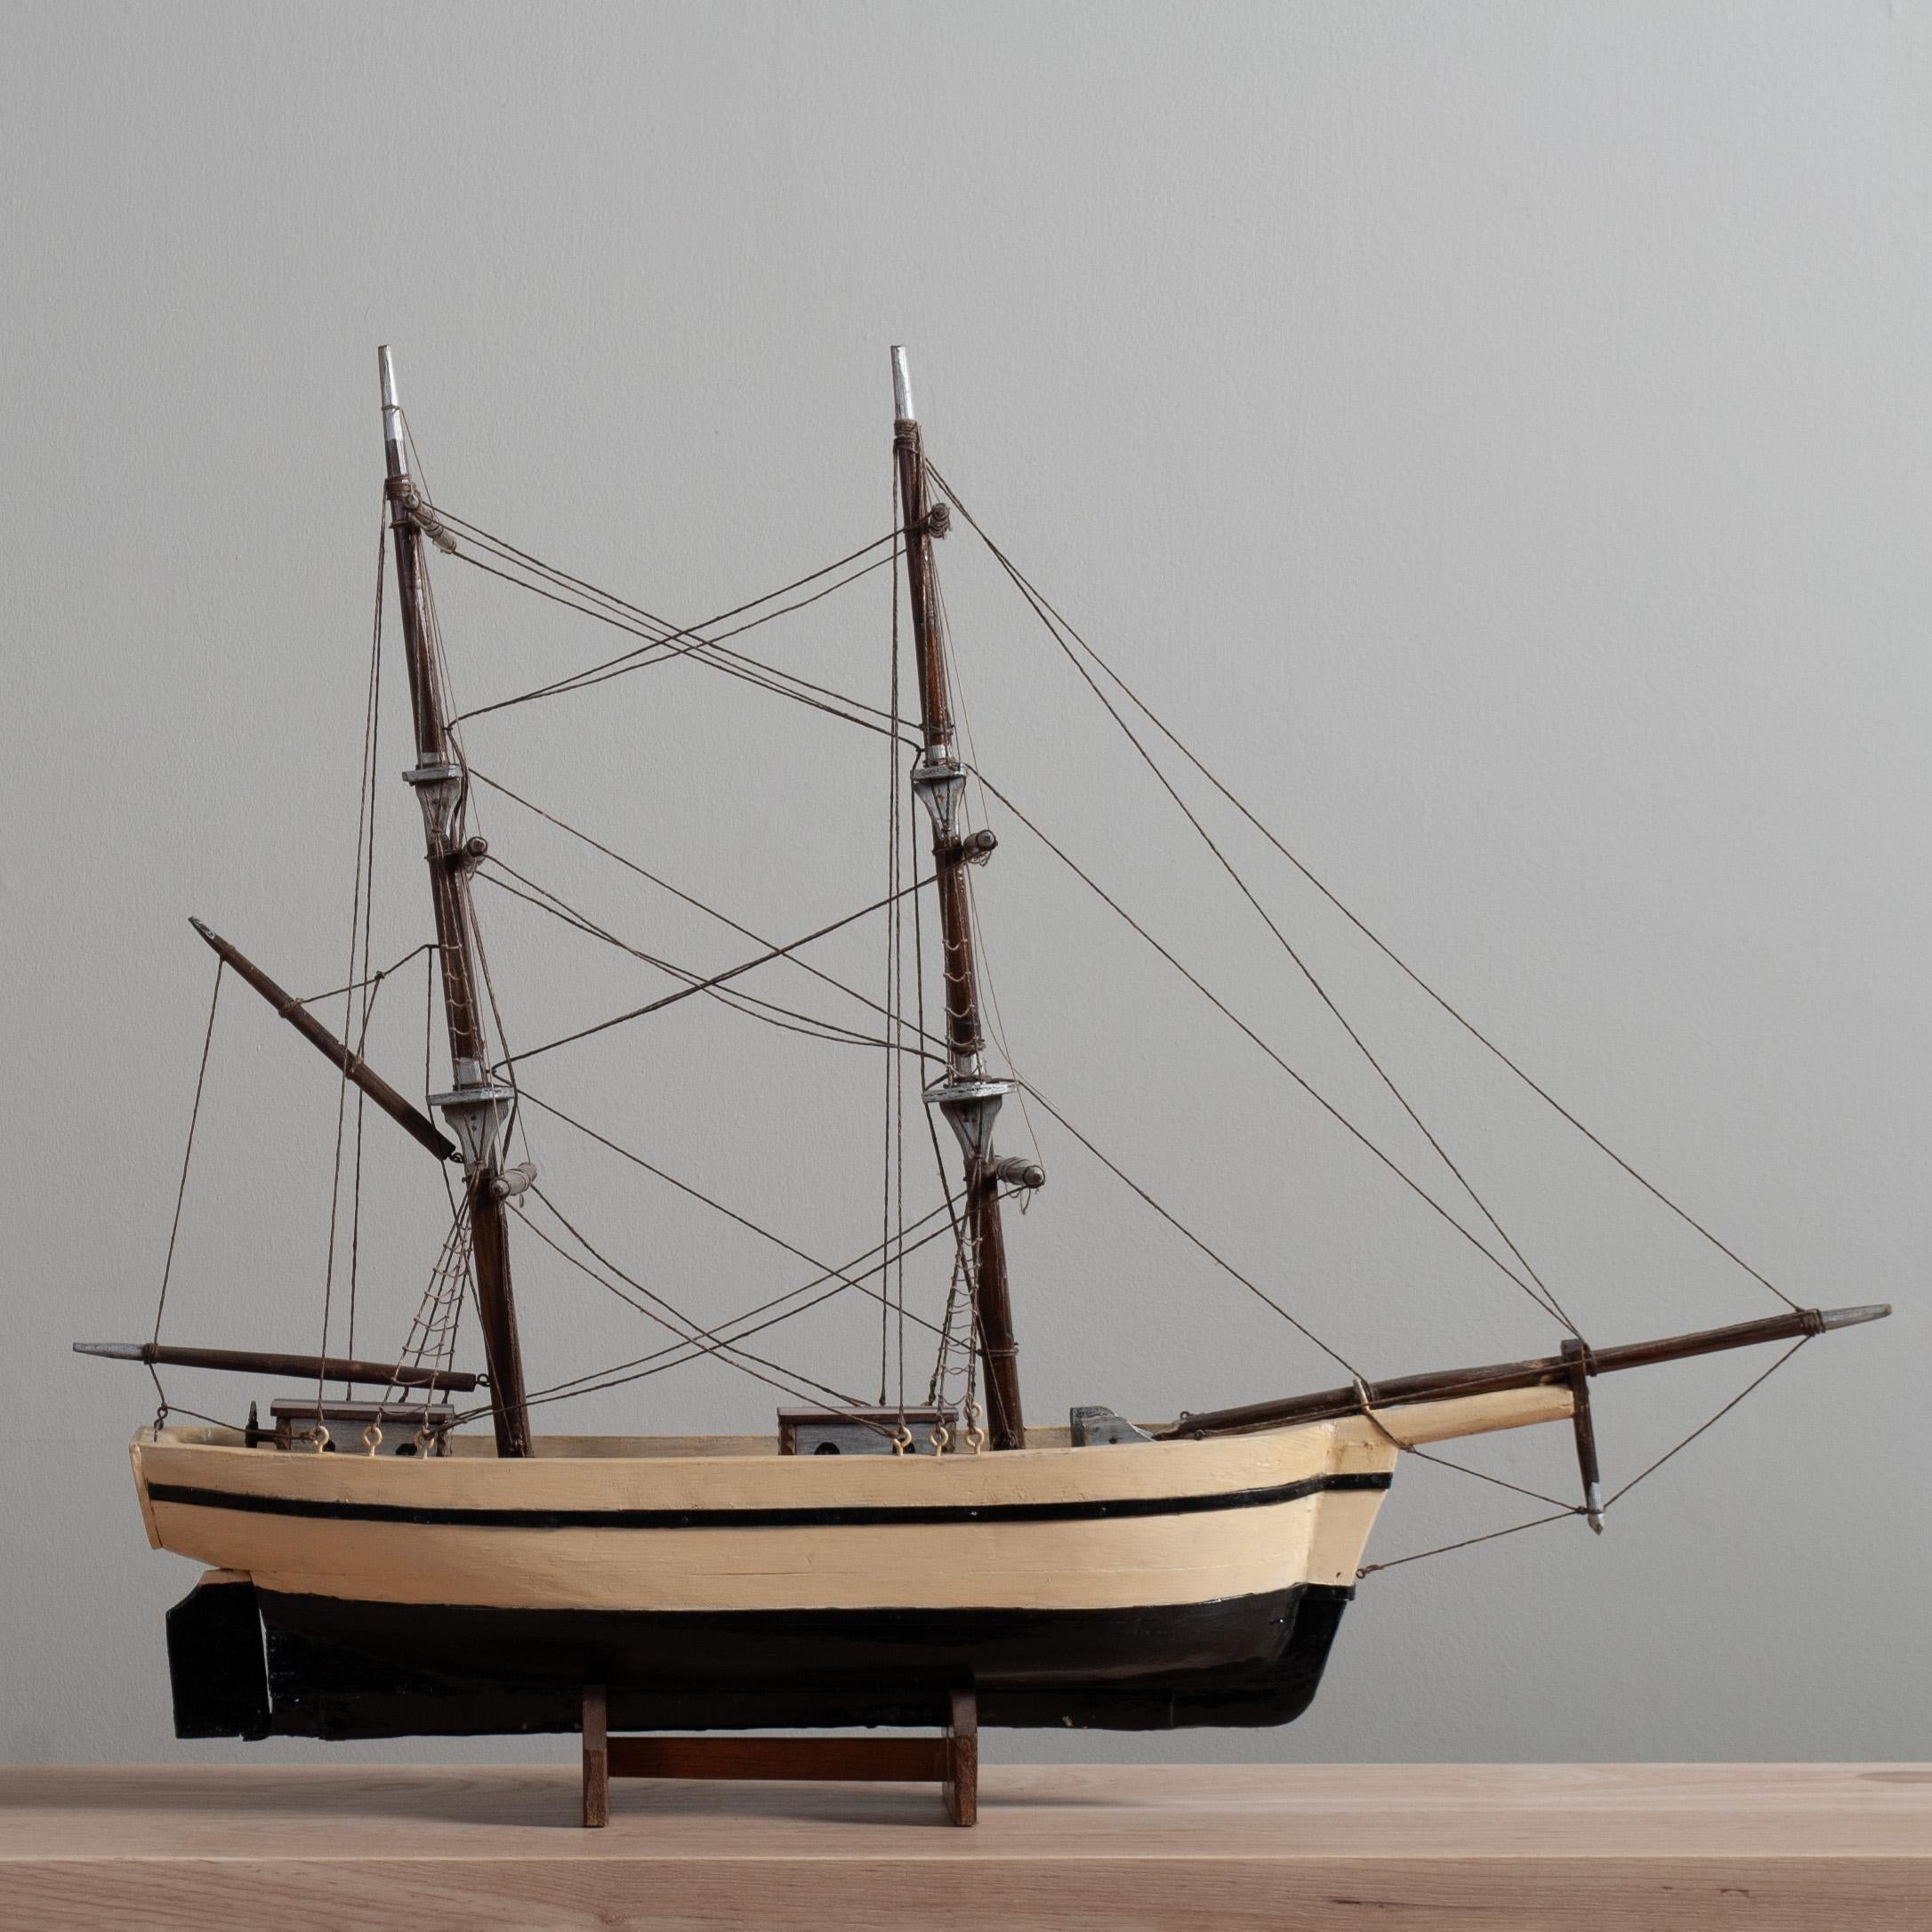 Skandinavisches Volkskunstboot mit 2 getakelten Masten - komplett aus Kiefern- und Teakholz selbst gebaut. Originallackierung. Handgefertigt und aus dem frühen 20. Jahrhundert. Einige wunderbare kleine Aufmerksamkeiten zum Detail bei der Verwendung